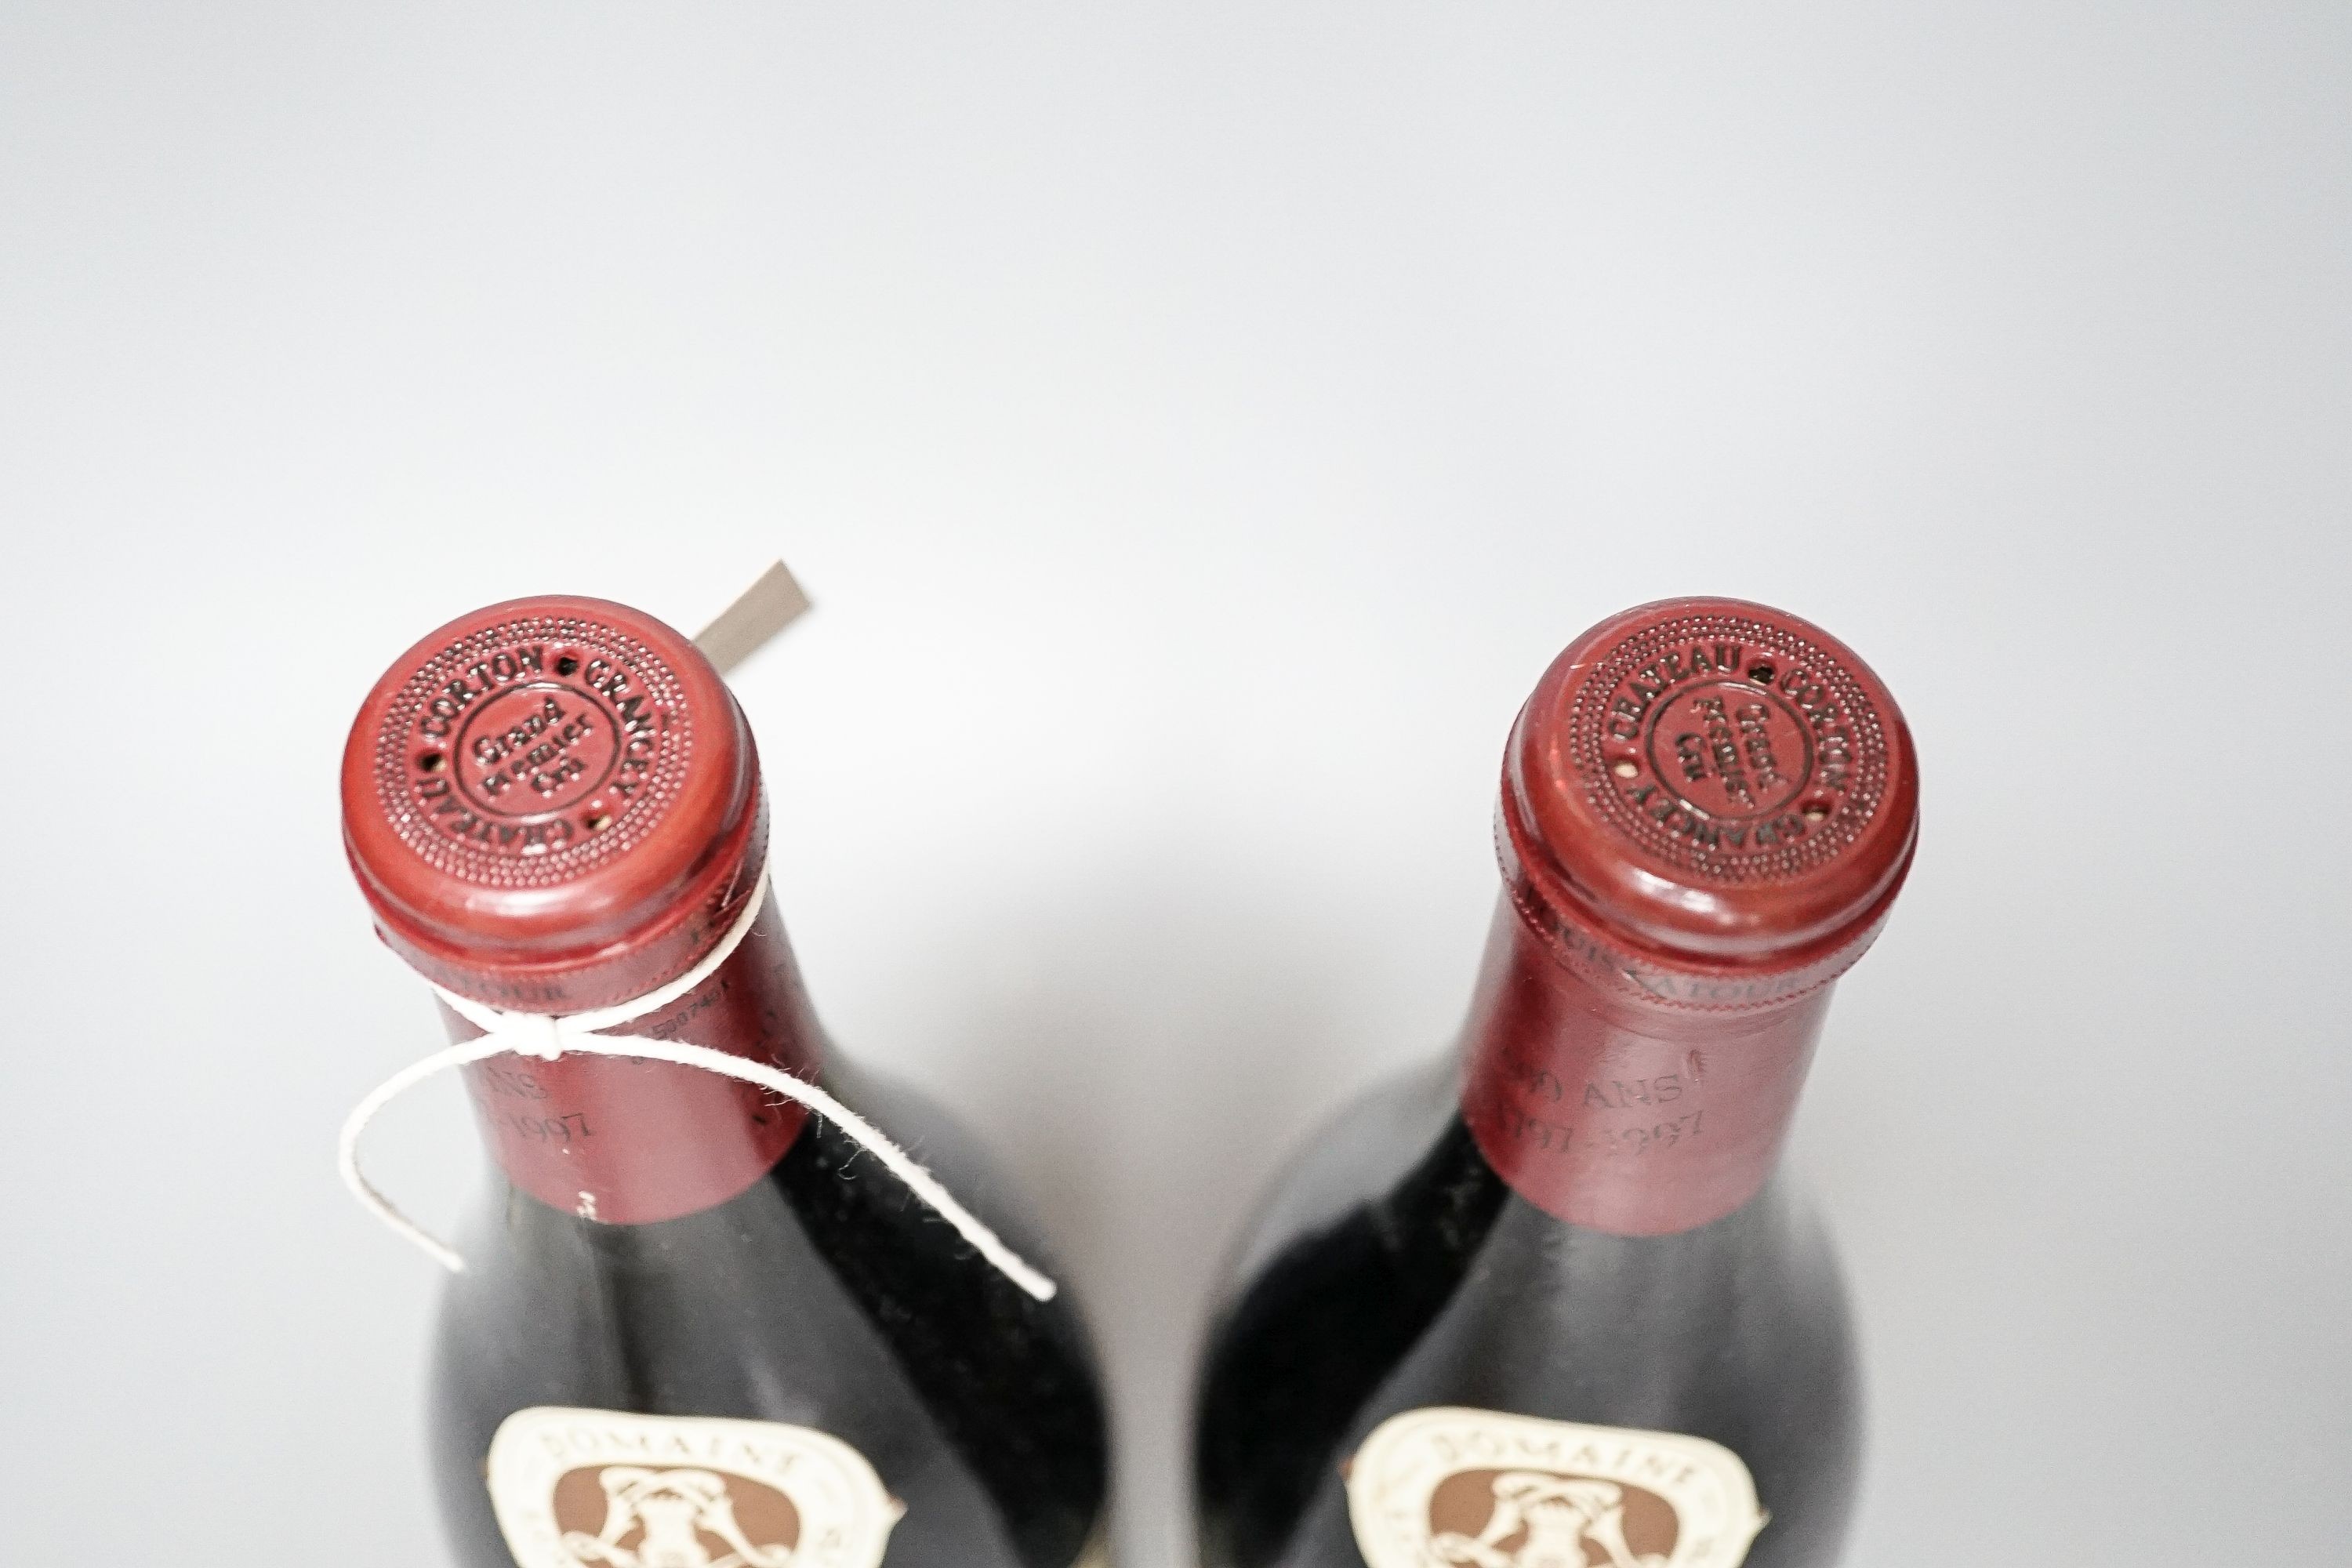 Two bottles of Domaine Louis Latour Corton Grancy, 1988, 75cl.